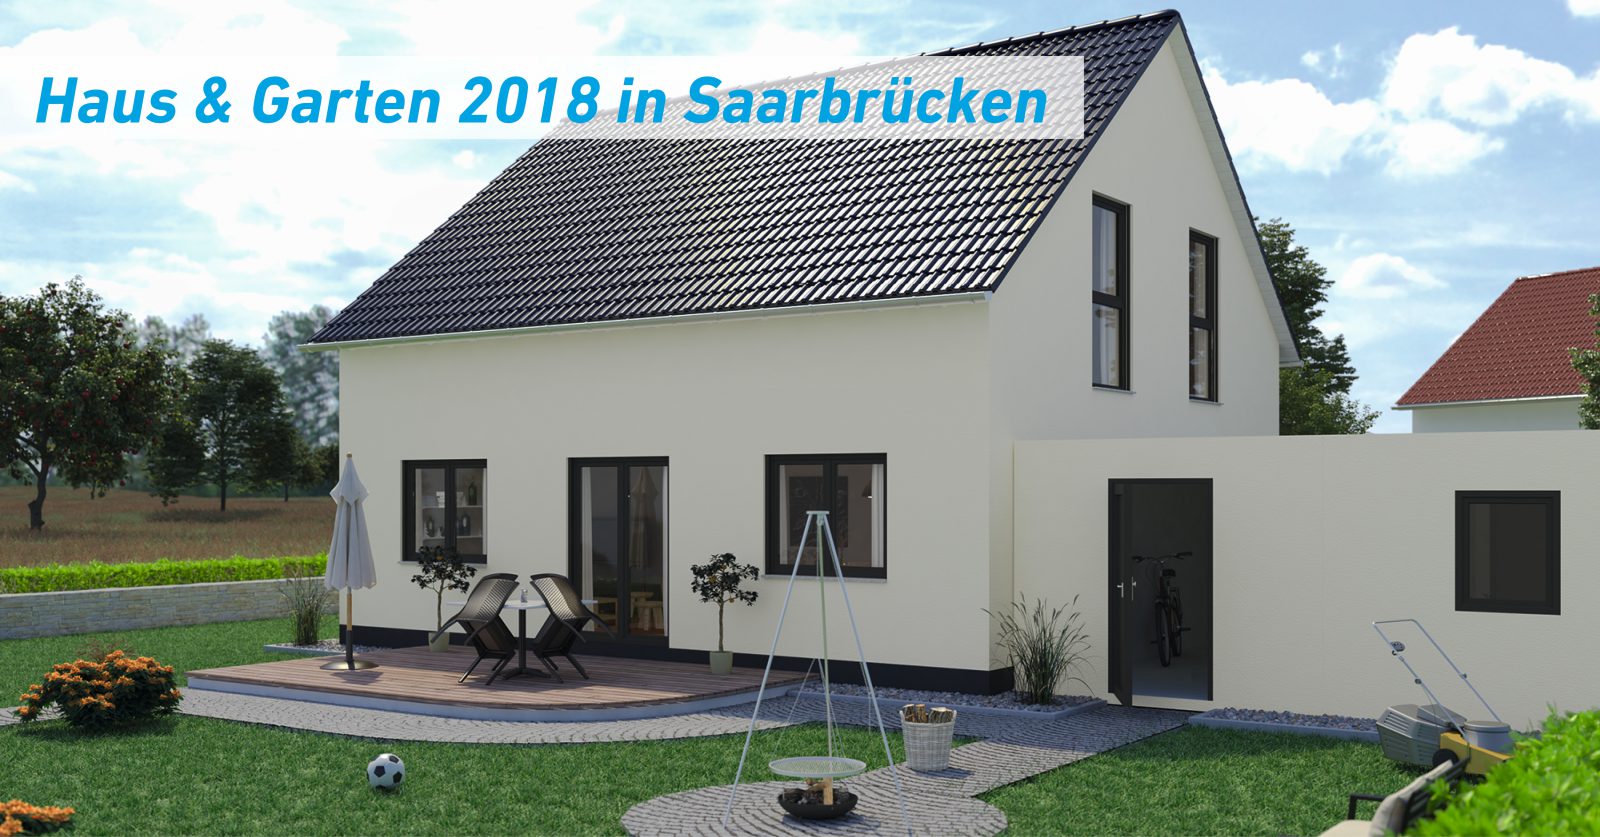 Haus & Garten Messe 2018 in Saarbrücken